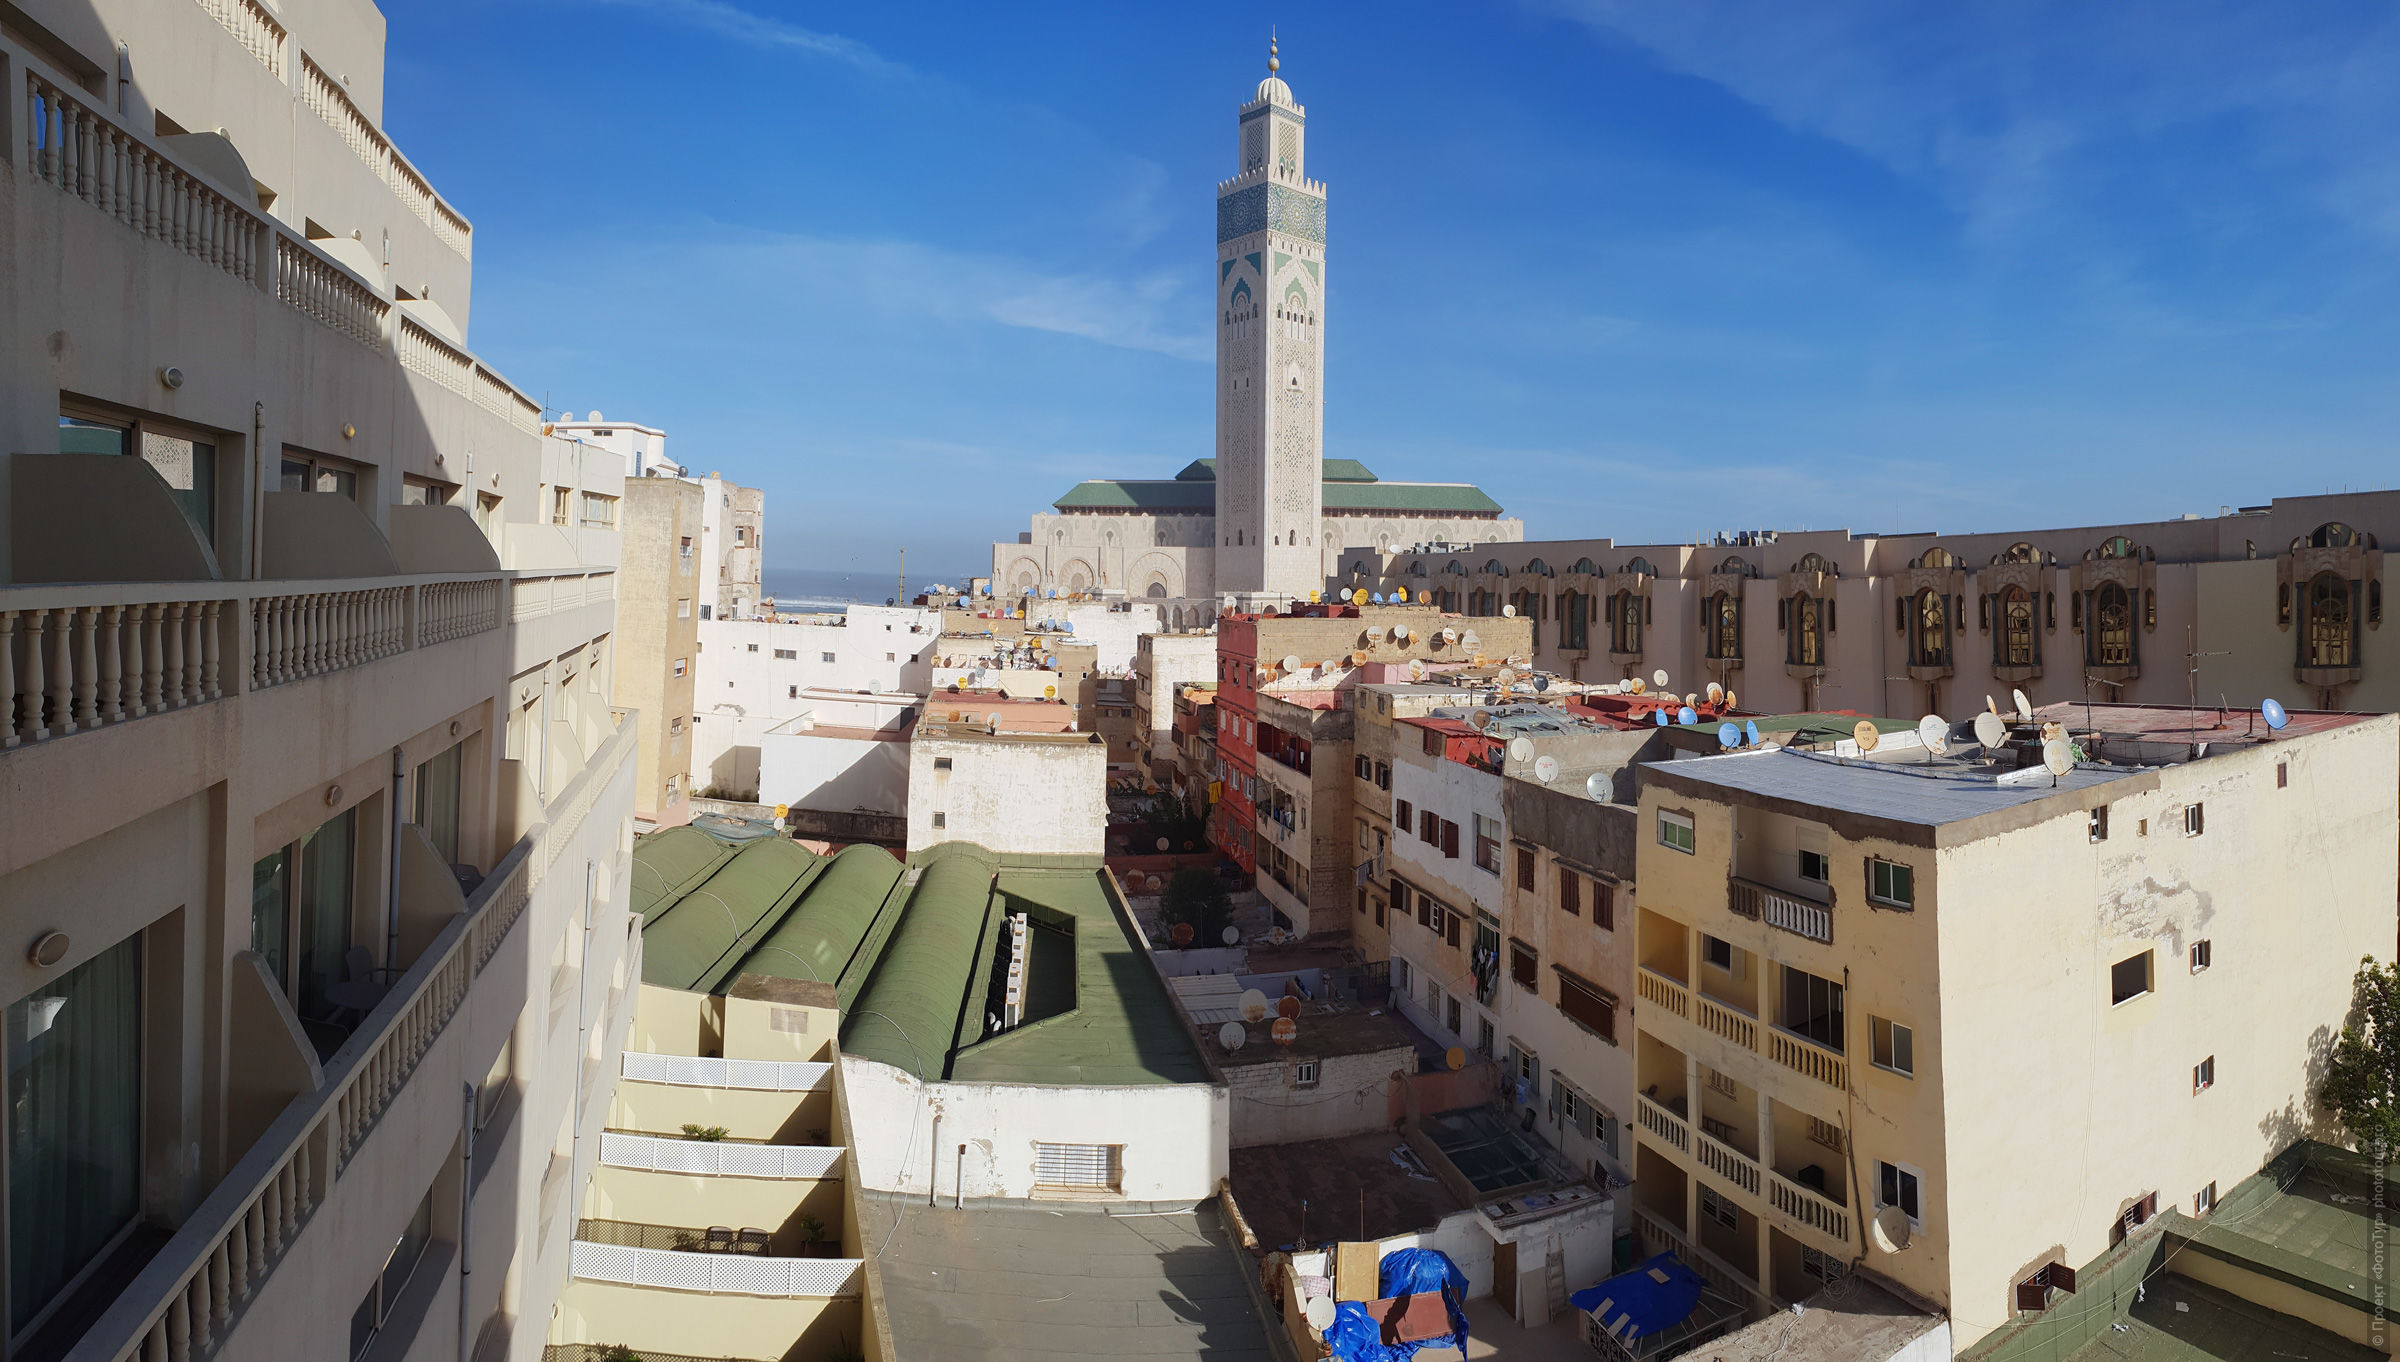 Главная мечеть Касабланки, фототур по Марокко с Проектом ФотоТур.